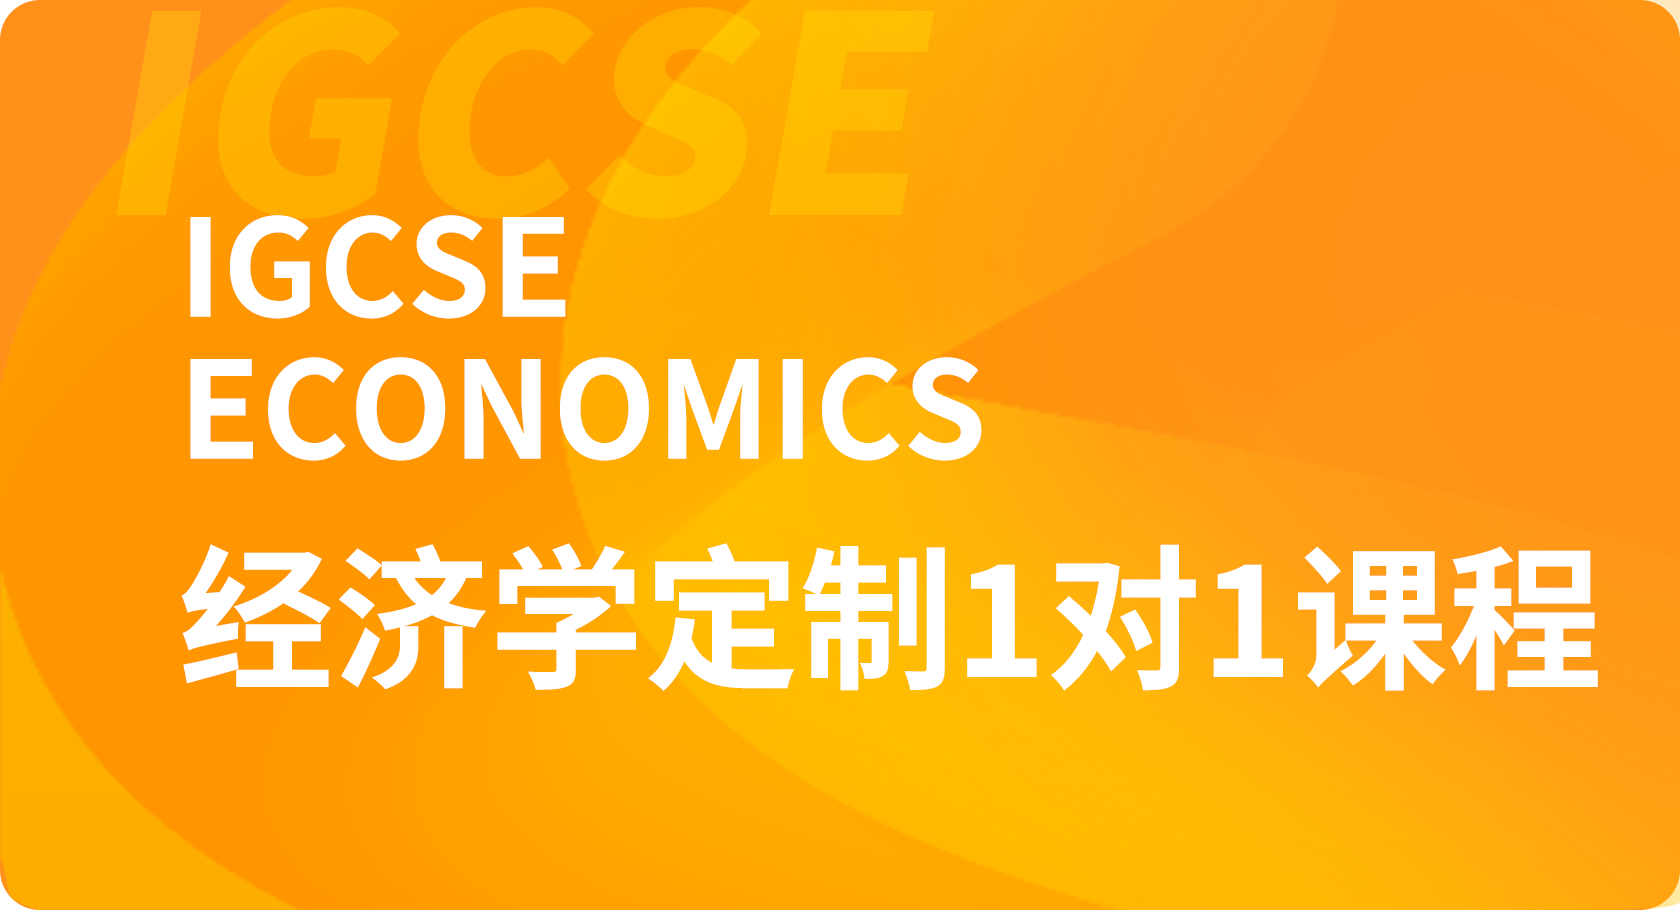 IGCSE经济学1对1课程